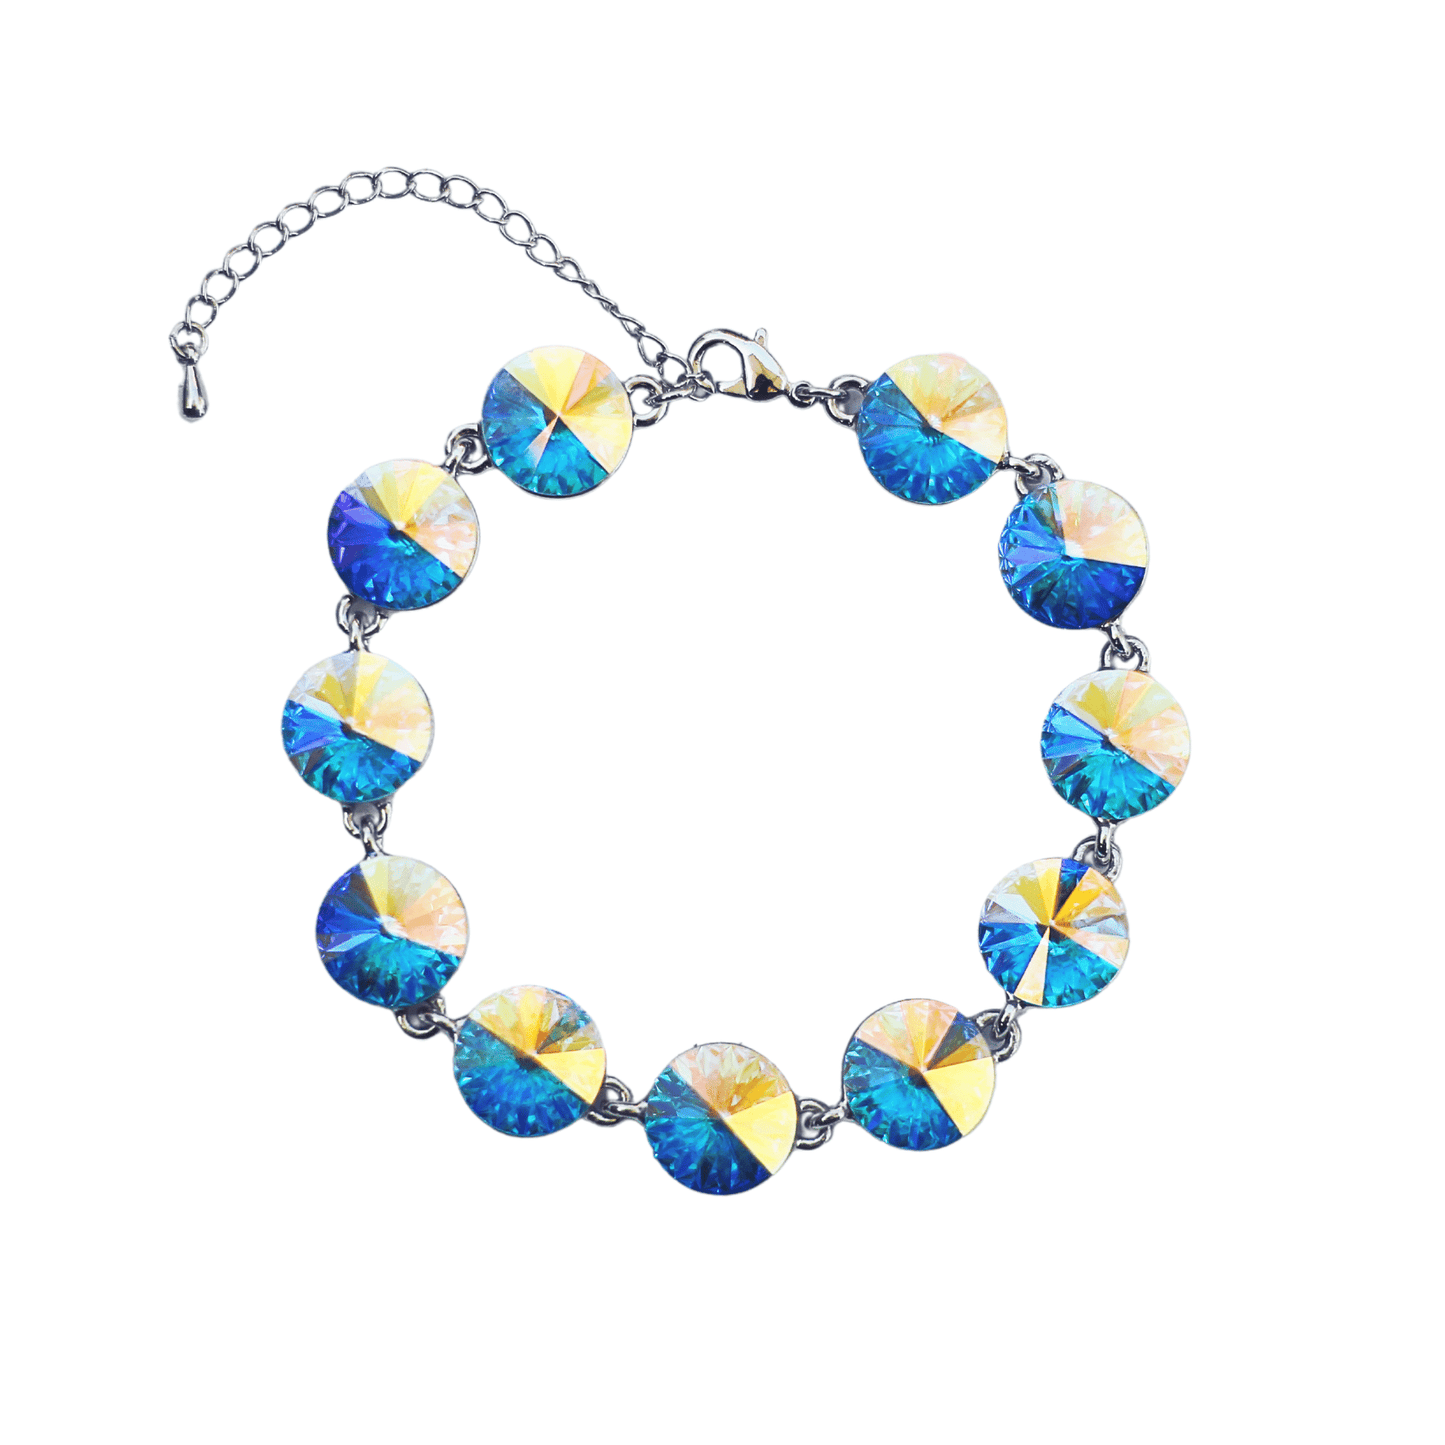 Fancy Swarovski Crystal Multicolor Bracelet